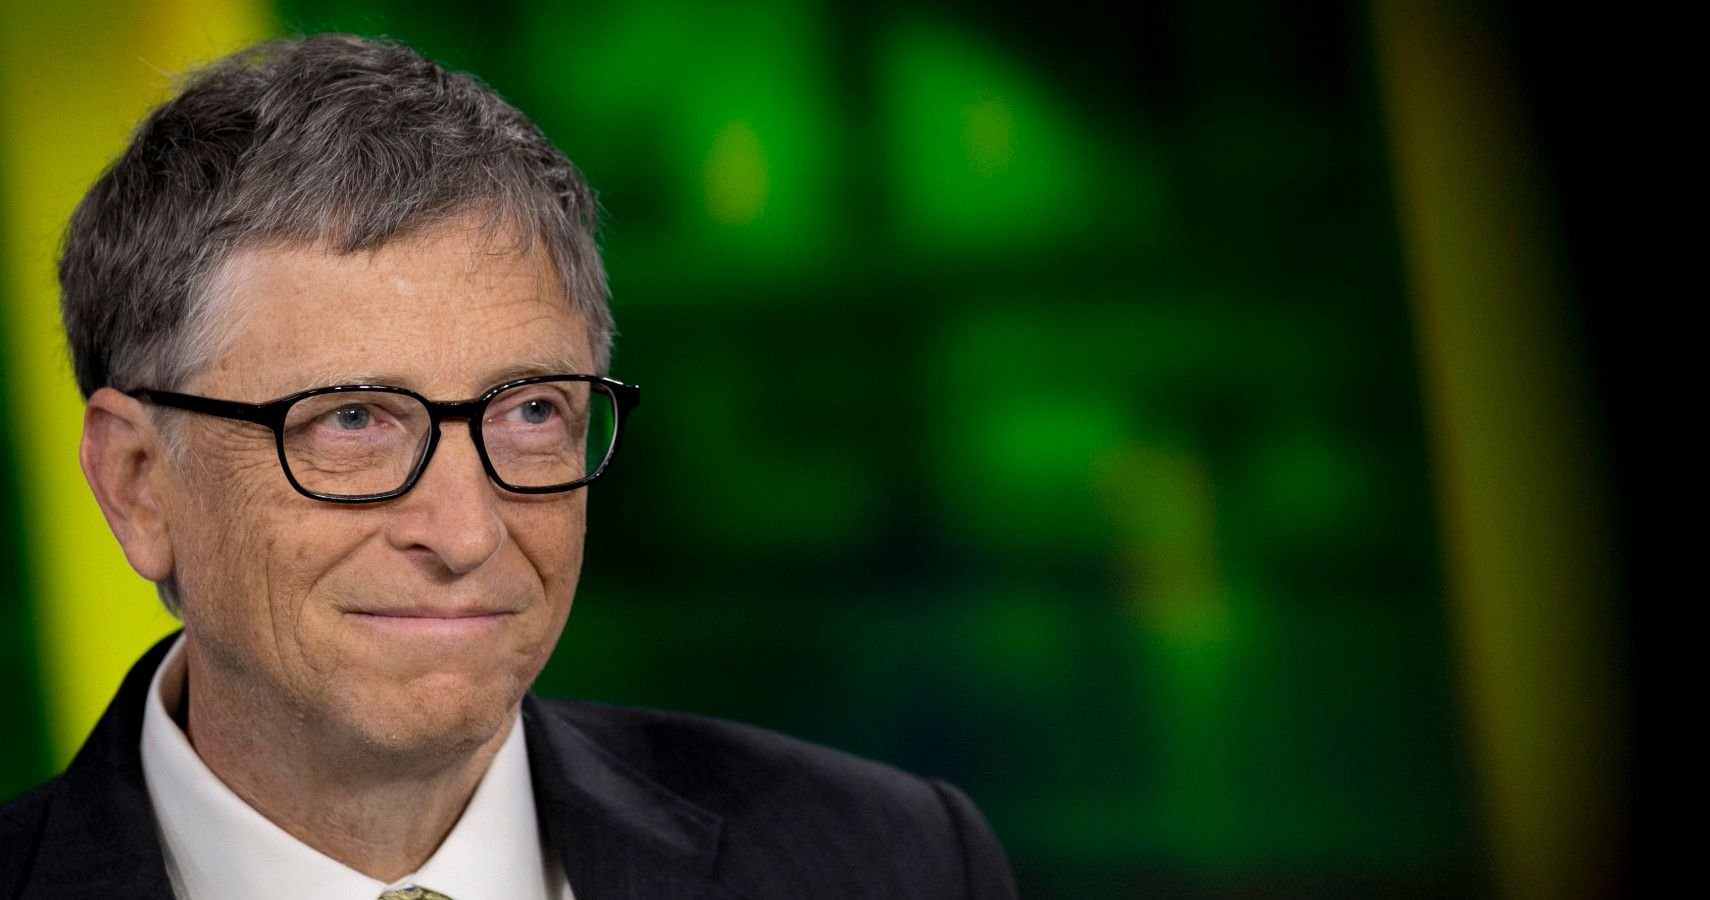 How Bill Gates Made Millions & Built An Empire